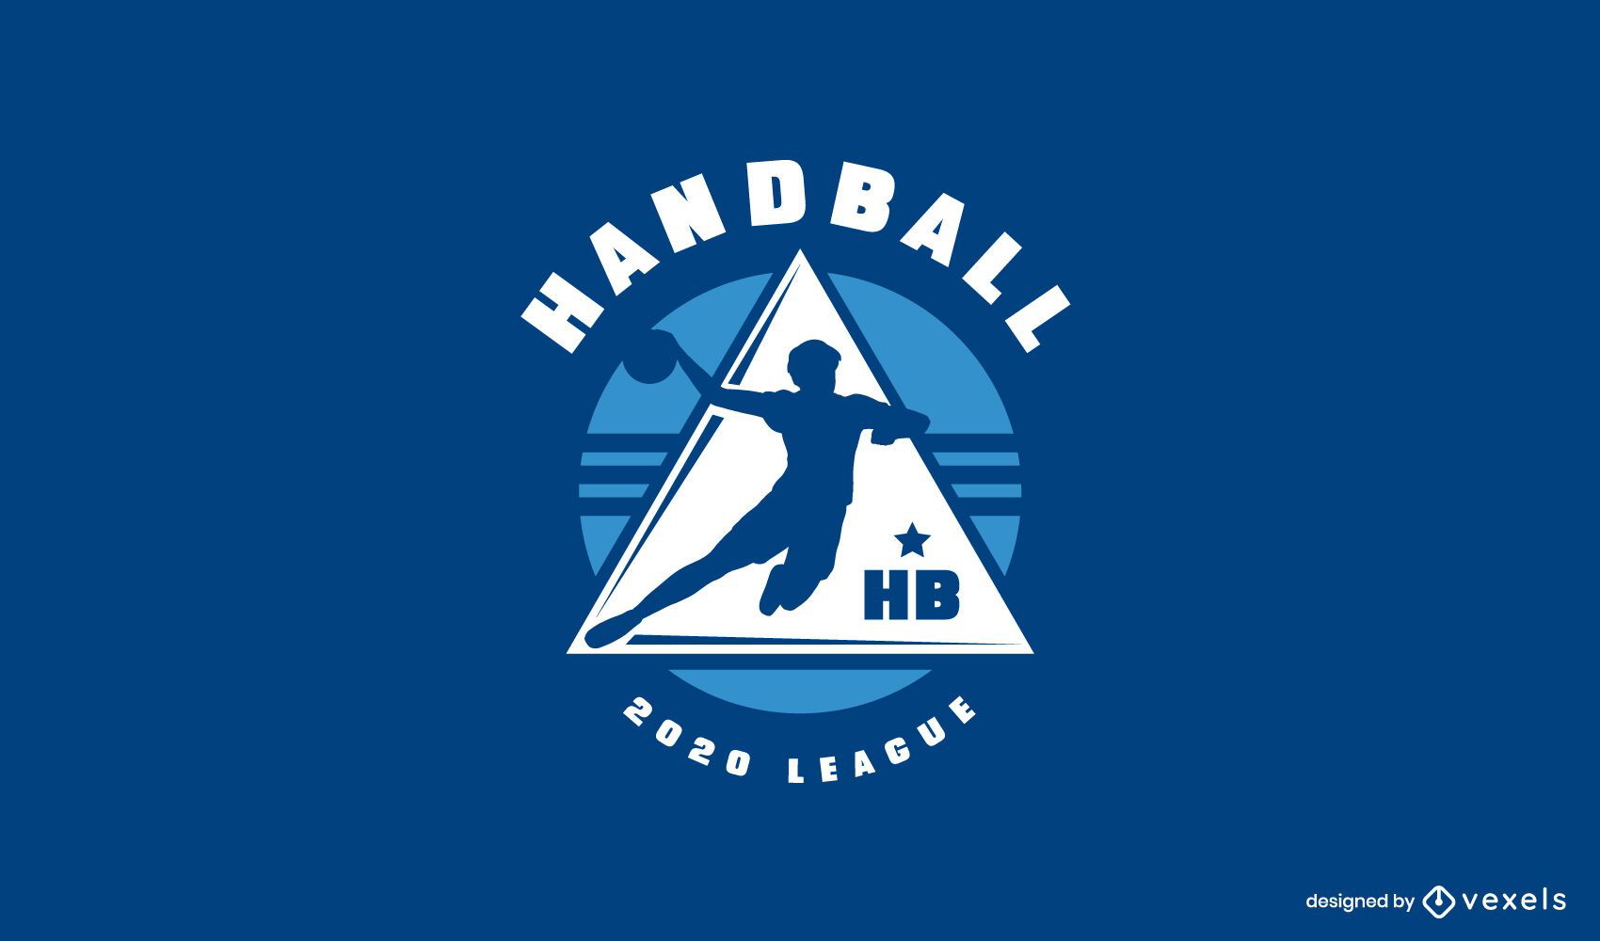 Plantilla de logotipo de liga de balonmano